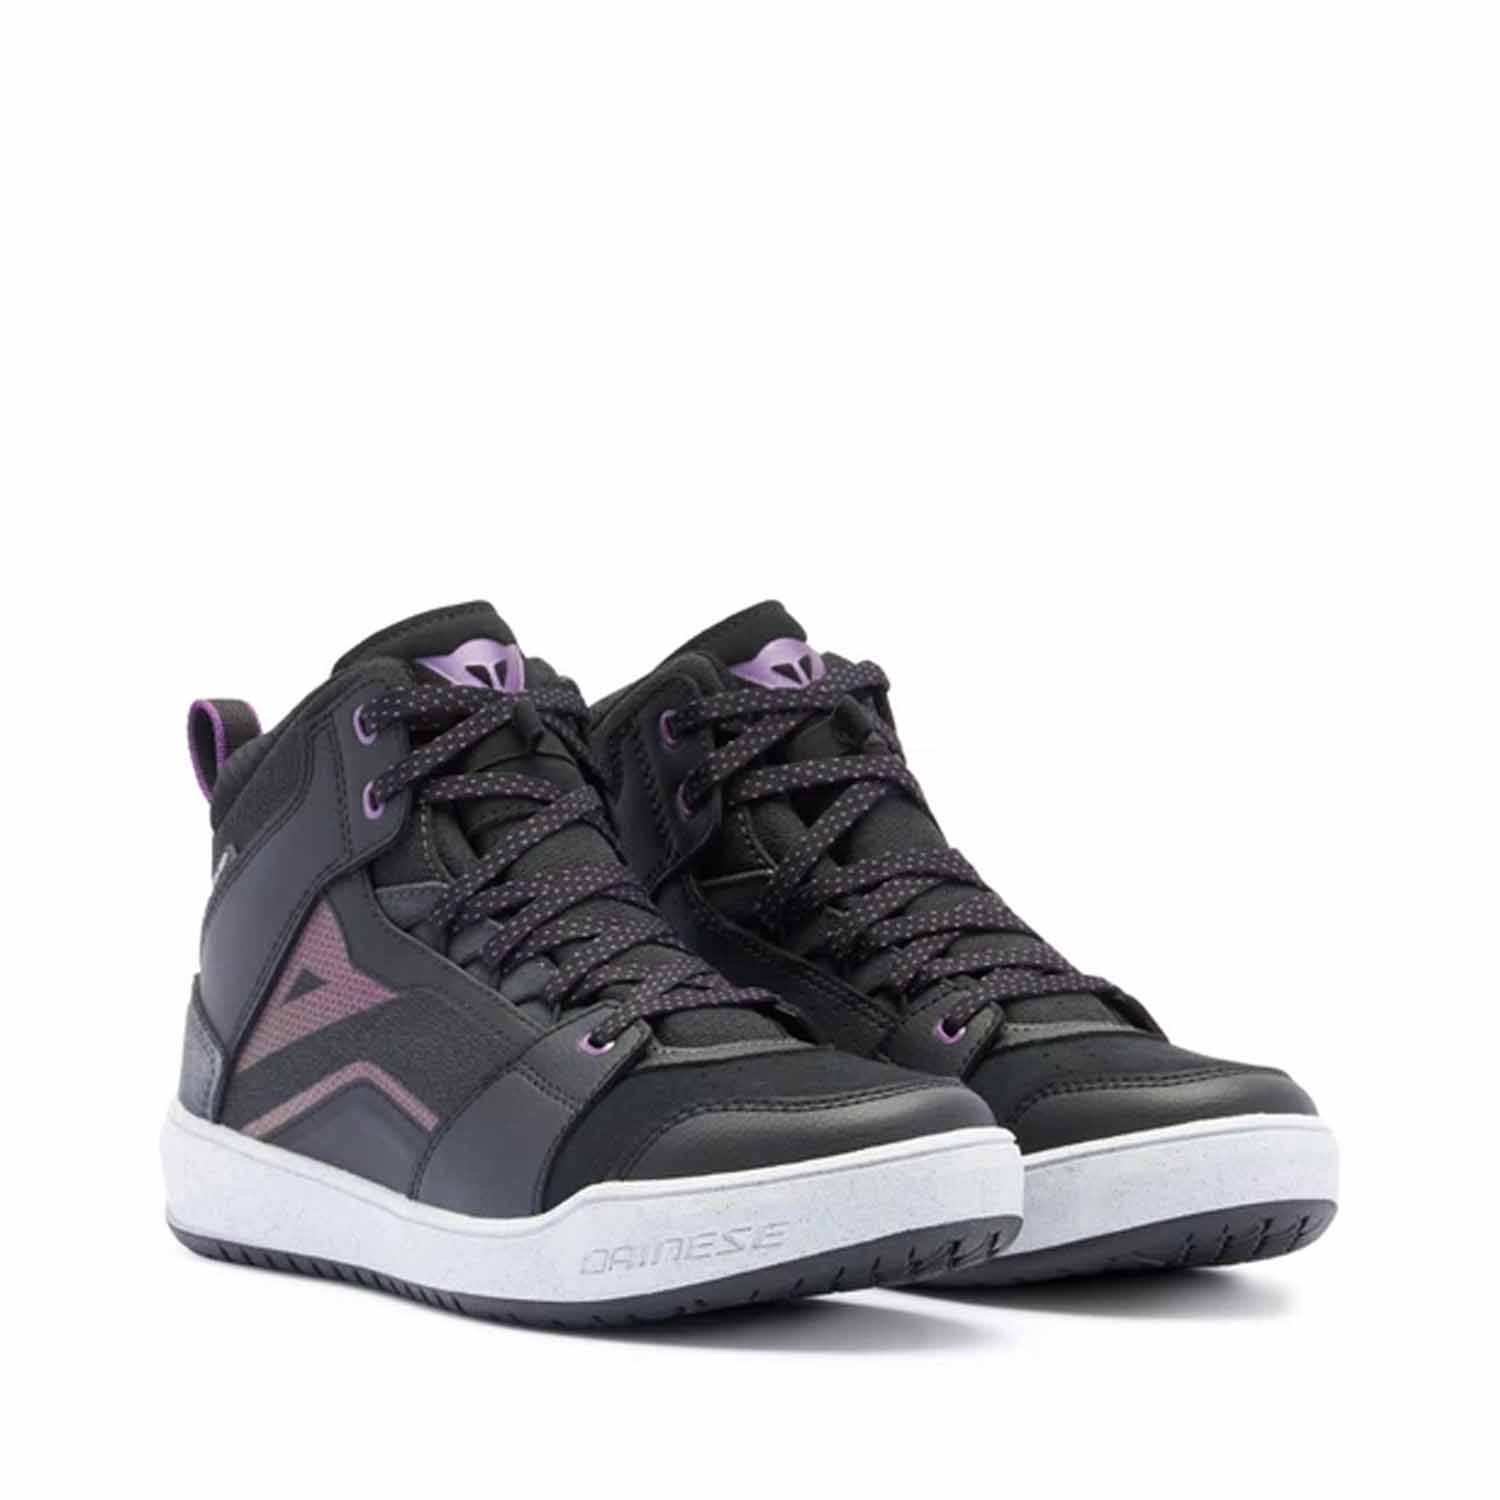 Image of Dainese Suburb D-WP Shoes WMN Black White Metal Purple Size 38 EN